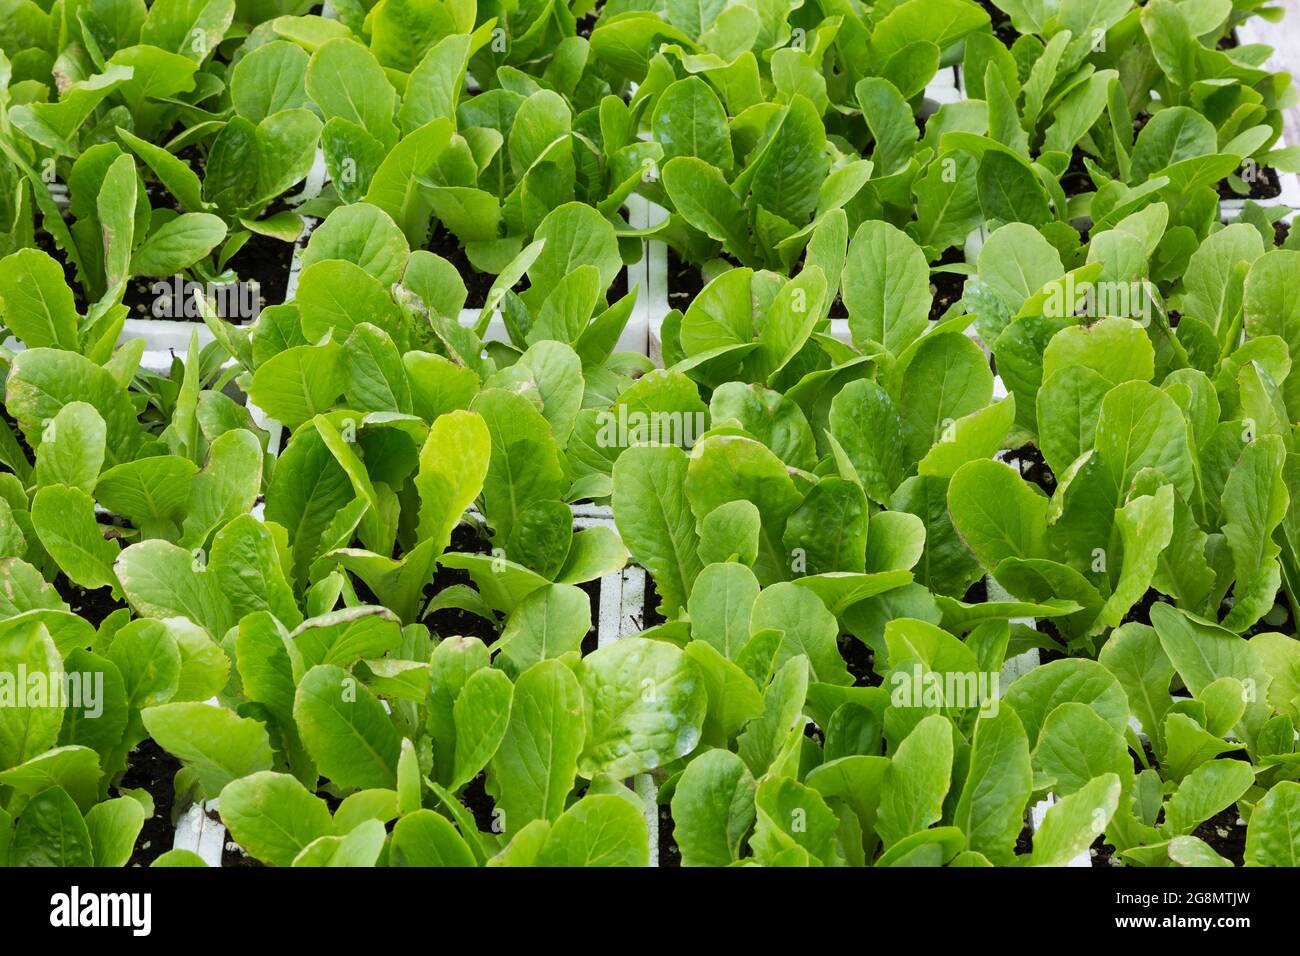 Lactuca sativa - les plants de laitue poussent dans des contenants de mousse de polystyrène blanche Banque D'Images